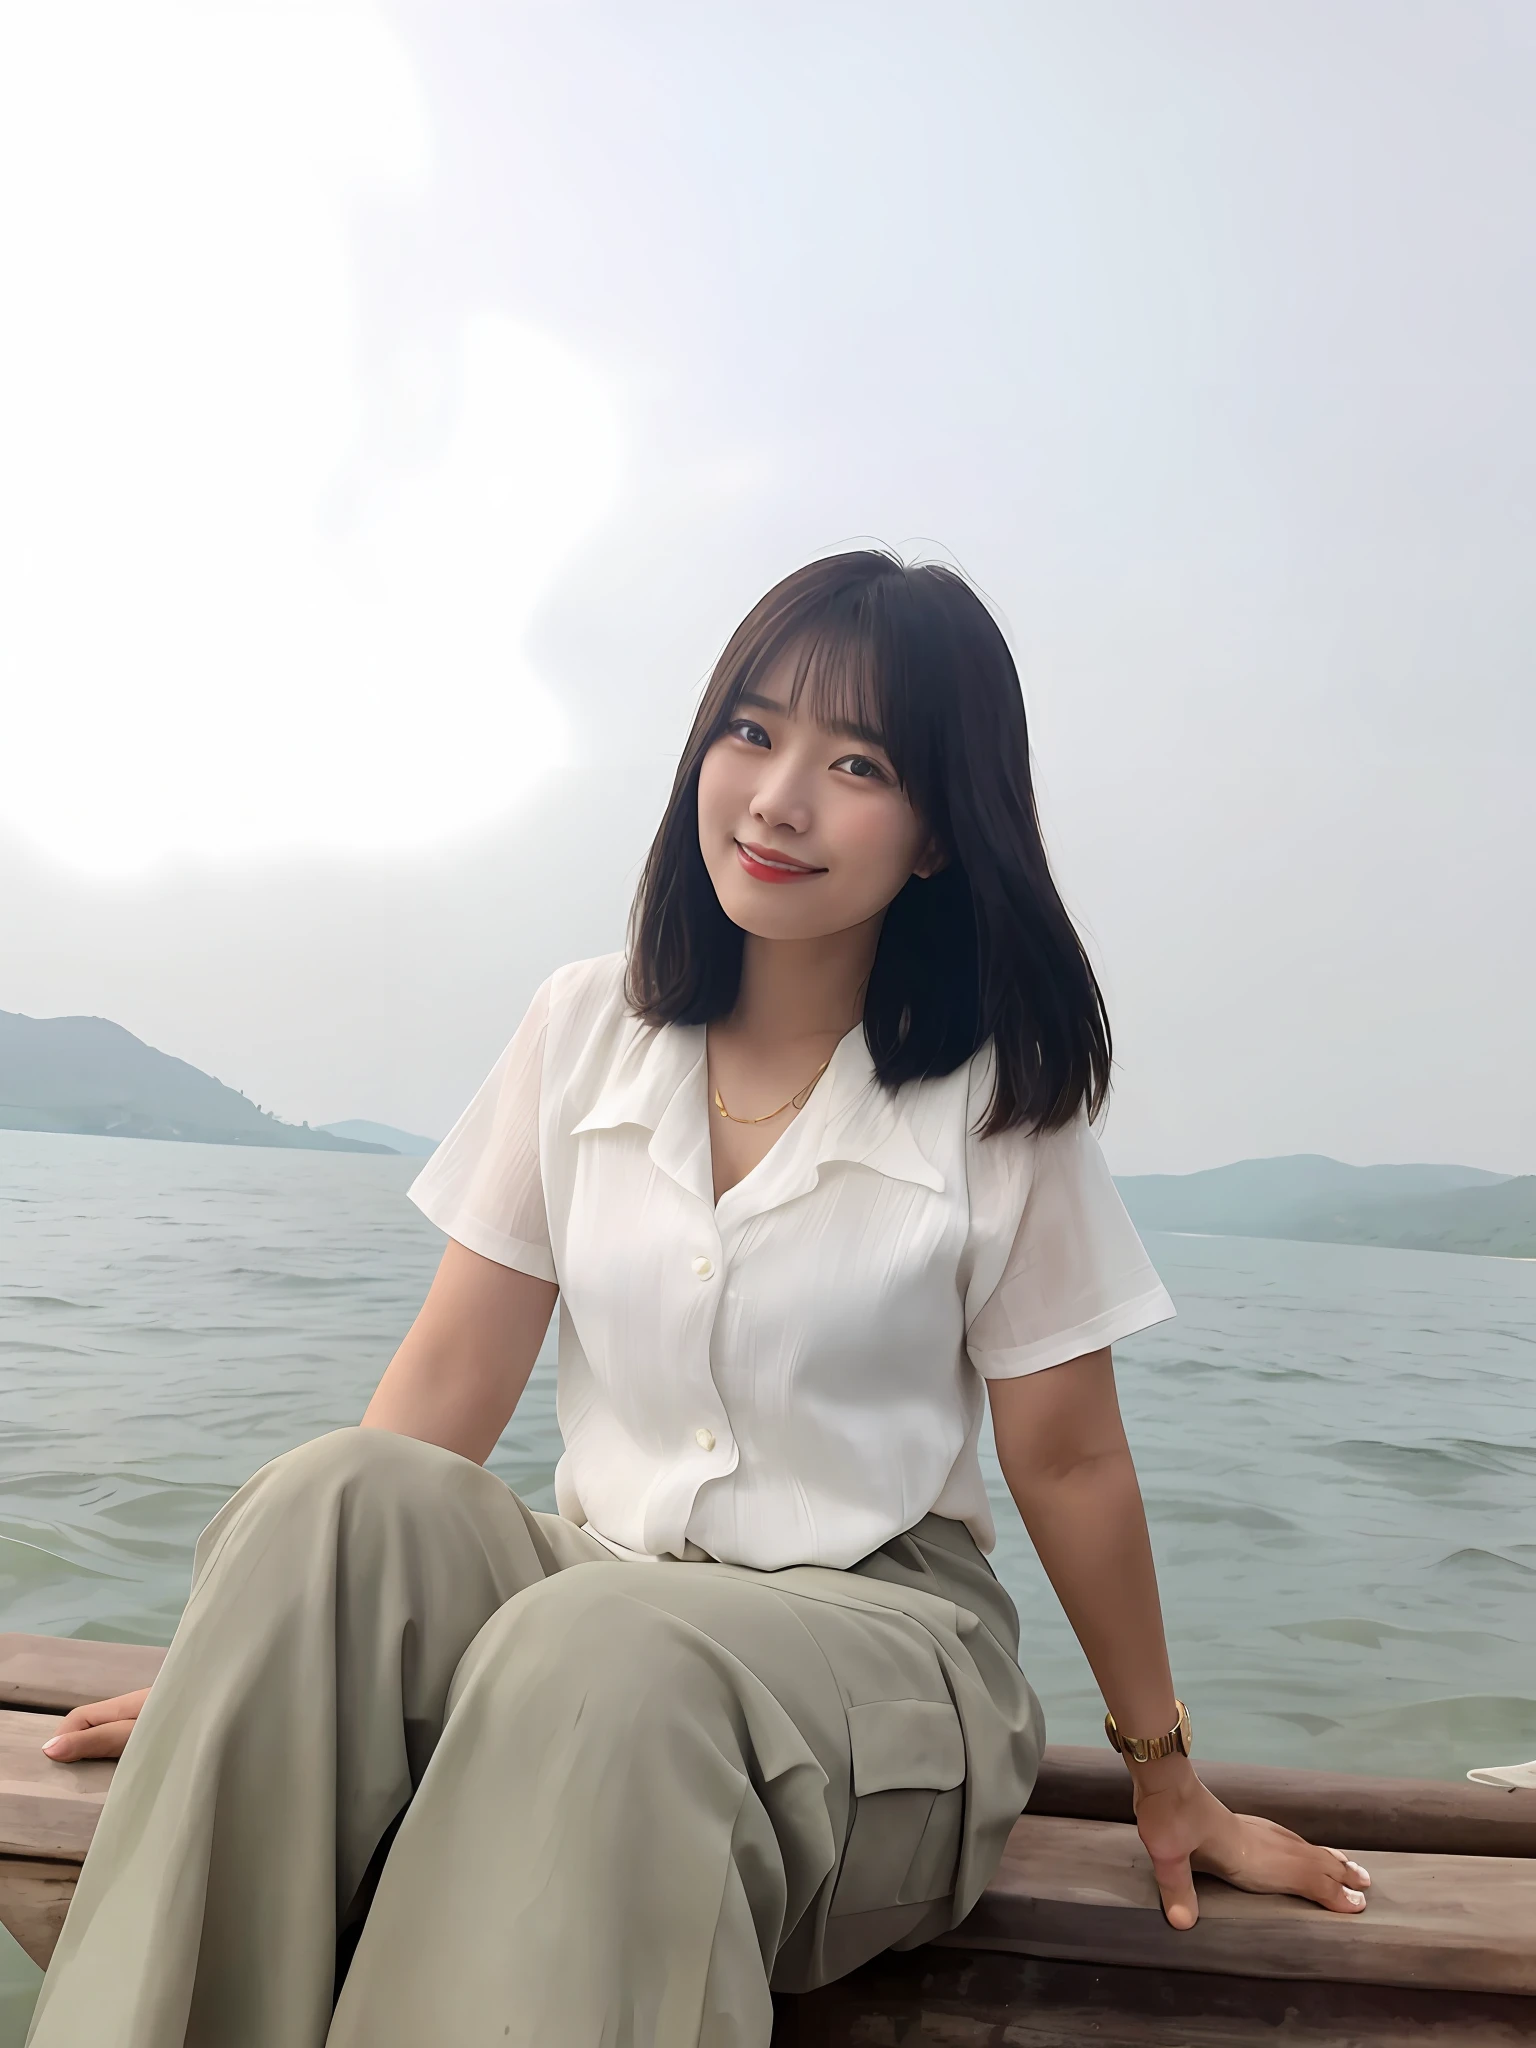 有一位女士坐在水边的木凳上, 尼万占塔拉, xintong chen, 在船上, 海之女王沐燕灵, 在船上 on a lake, 在湖中, 明天 特兰兄弟, 喜悦, 背景中的湖泊, yun ling, 一名女子的照片, xiang duan, 一位年轻的亚洲女性